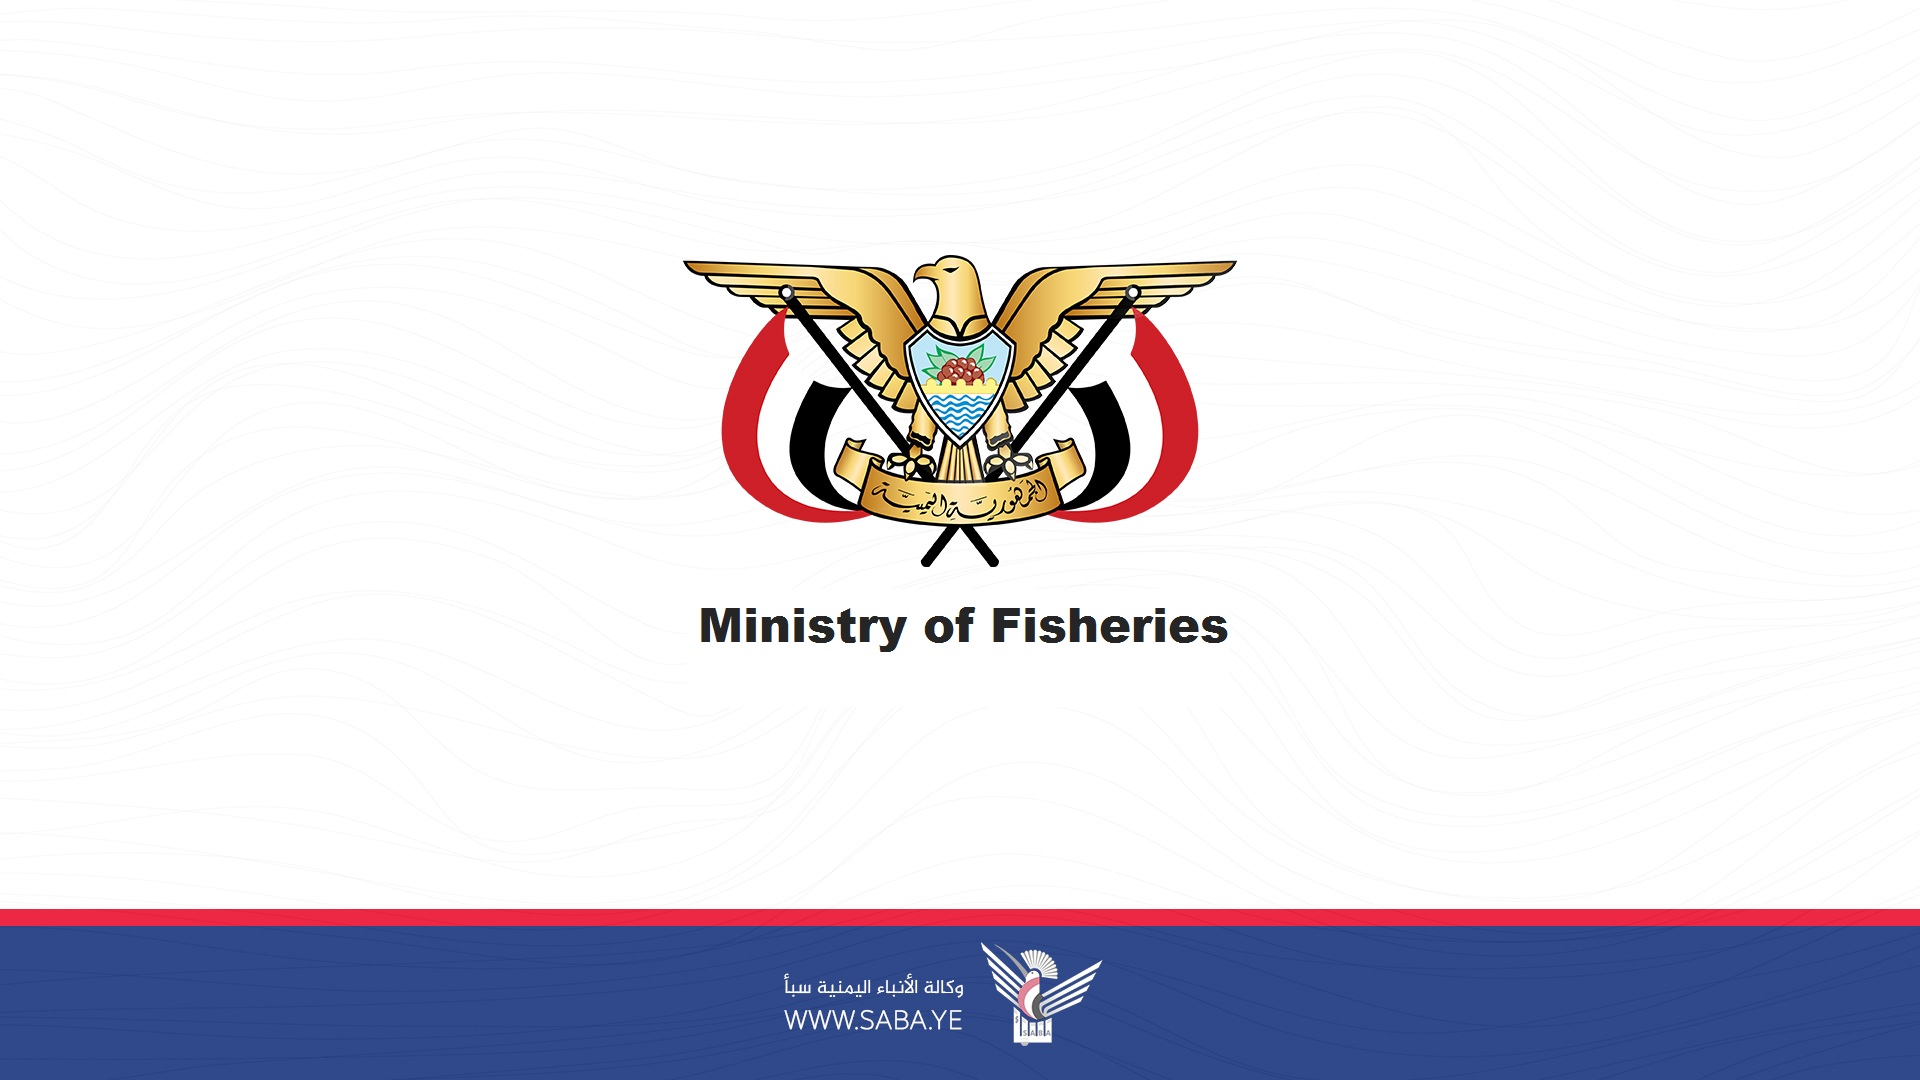 Fischereiministerium gibt Eröffnung der Fangsaison für Küstengarnelen im Roten Meer bekannt